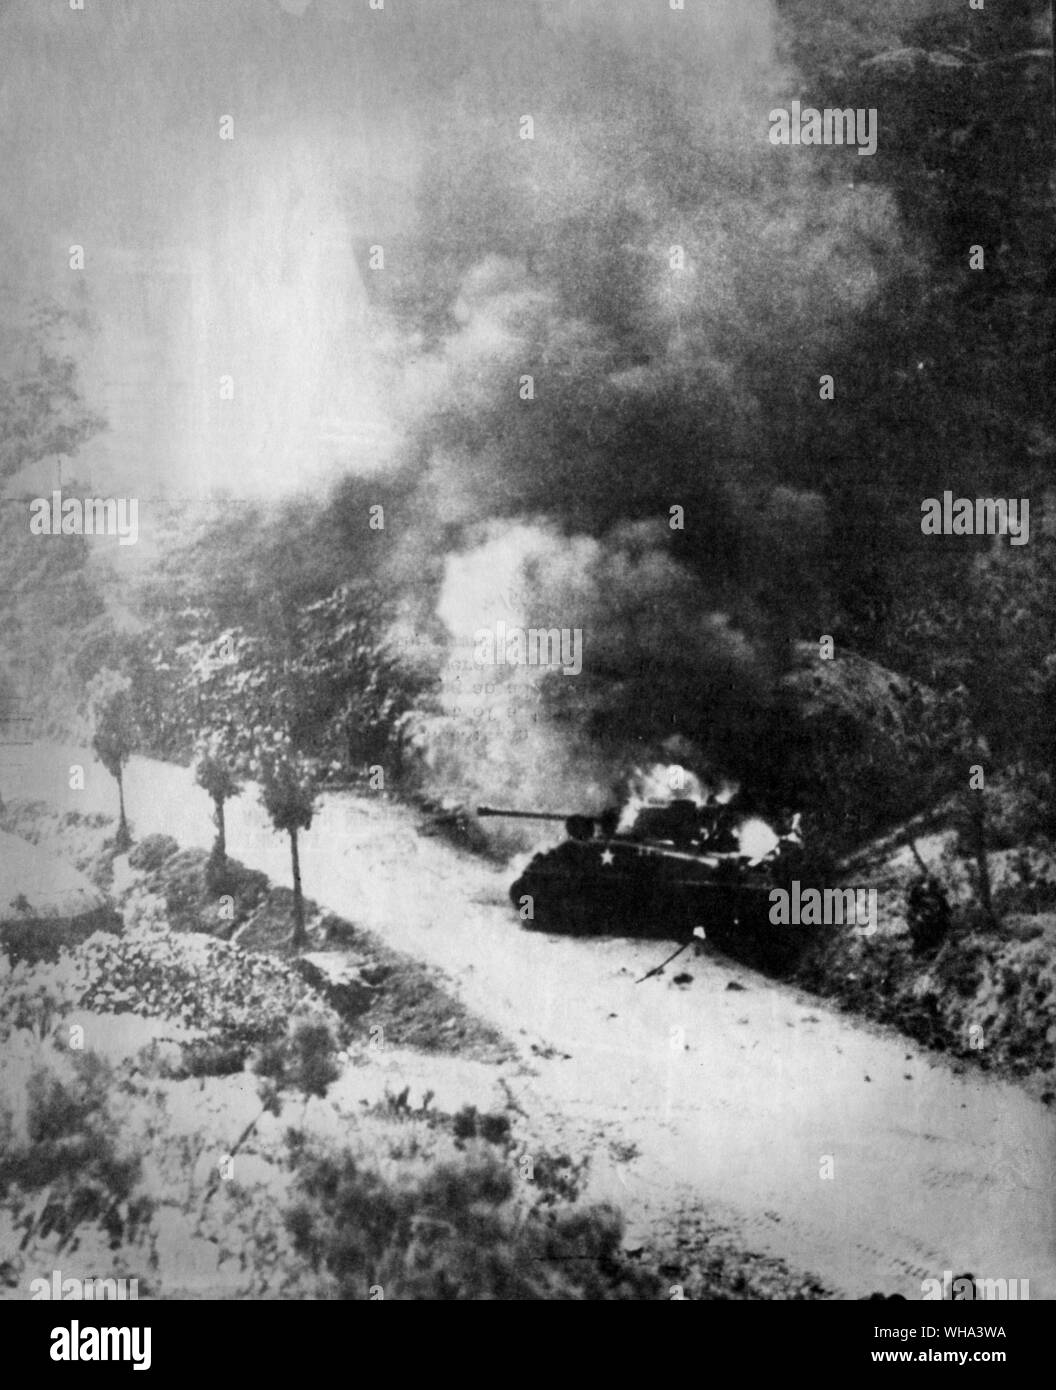 29 Août 1950 : Guerre de Corée. Un char moyen américain blazes après substitution, partie d'une configuration en série" de mines anti-char lors de la couverture d'une avance sur Chindong. Les membres de l'équipage de char ont été blessés mais entraînés eux-mêmes clairement avant les munitions sur le réservoir a explosé. Banque D'Images